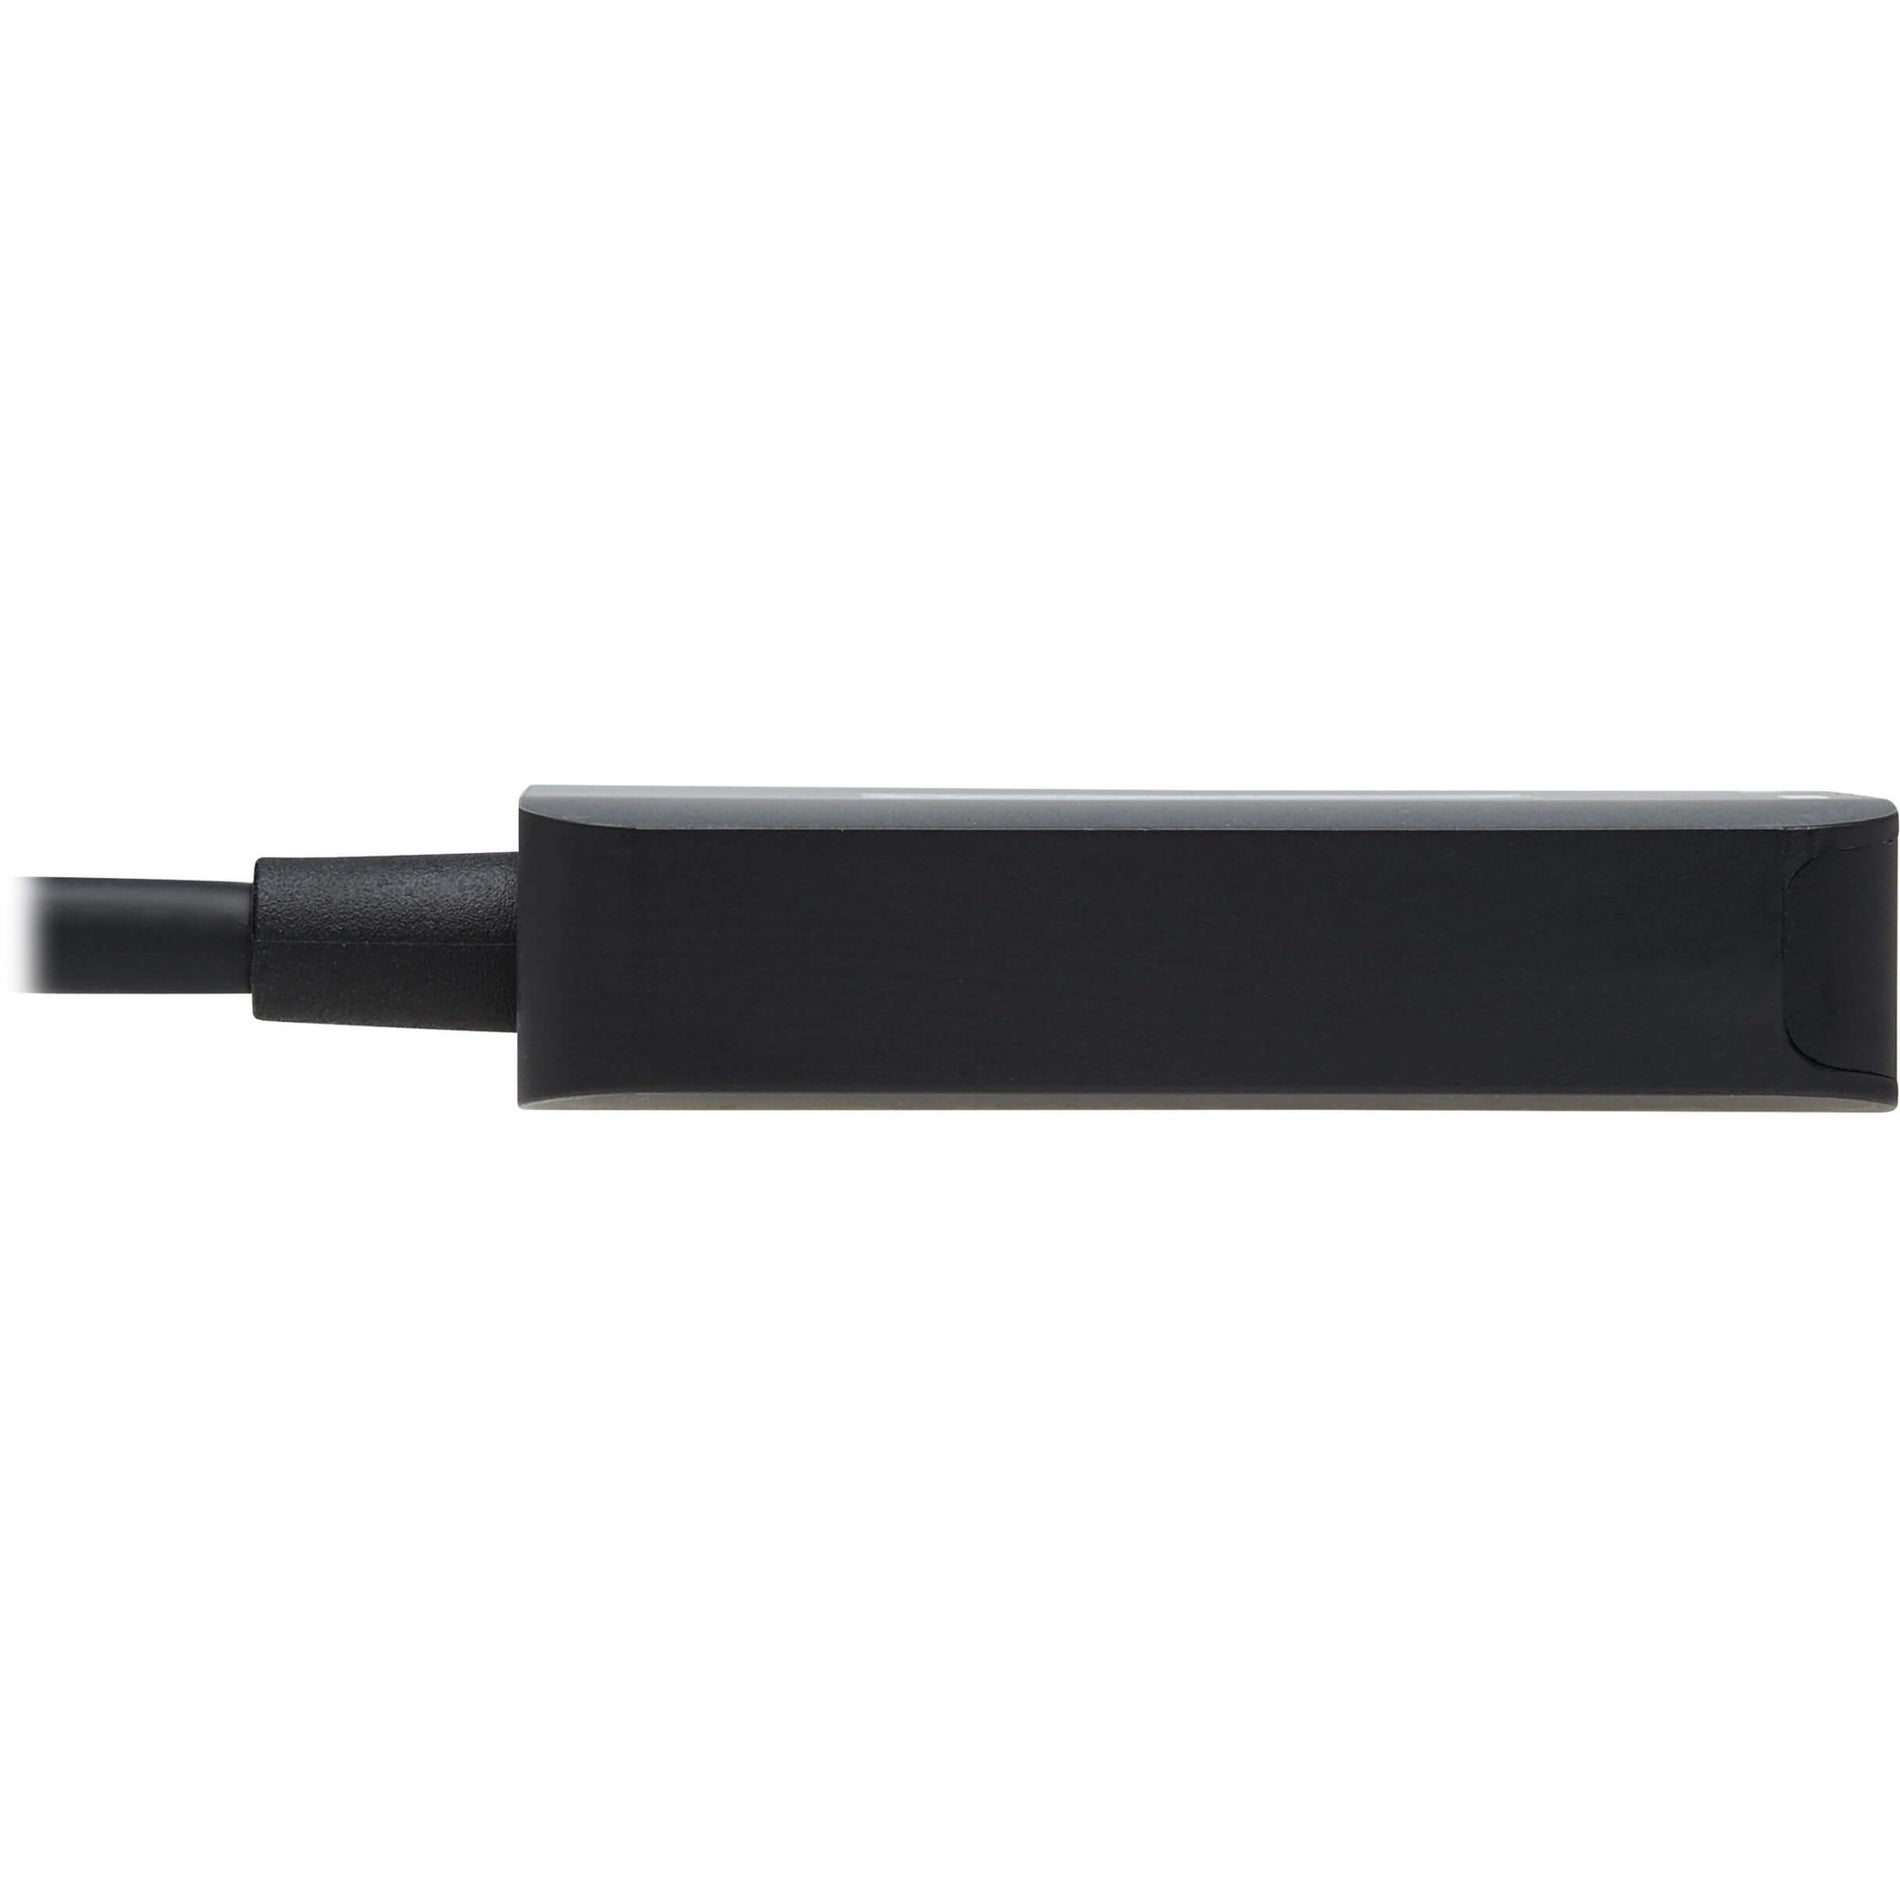 Tripp Lite U444-2H-MST4K6 USB-C Adapter, Dual Display, Black, HDMI/USB-C, 3840 x 2160, Plug and Play